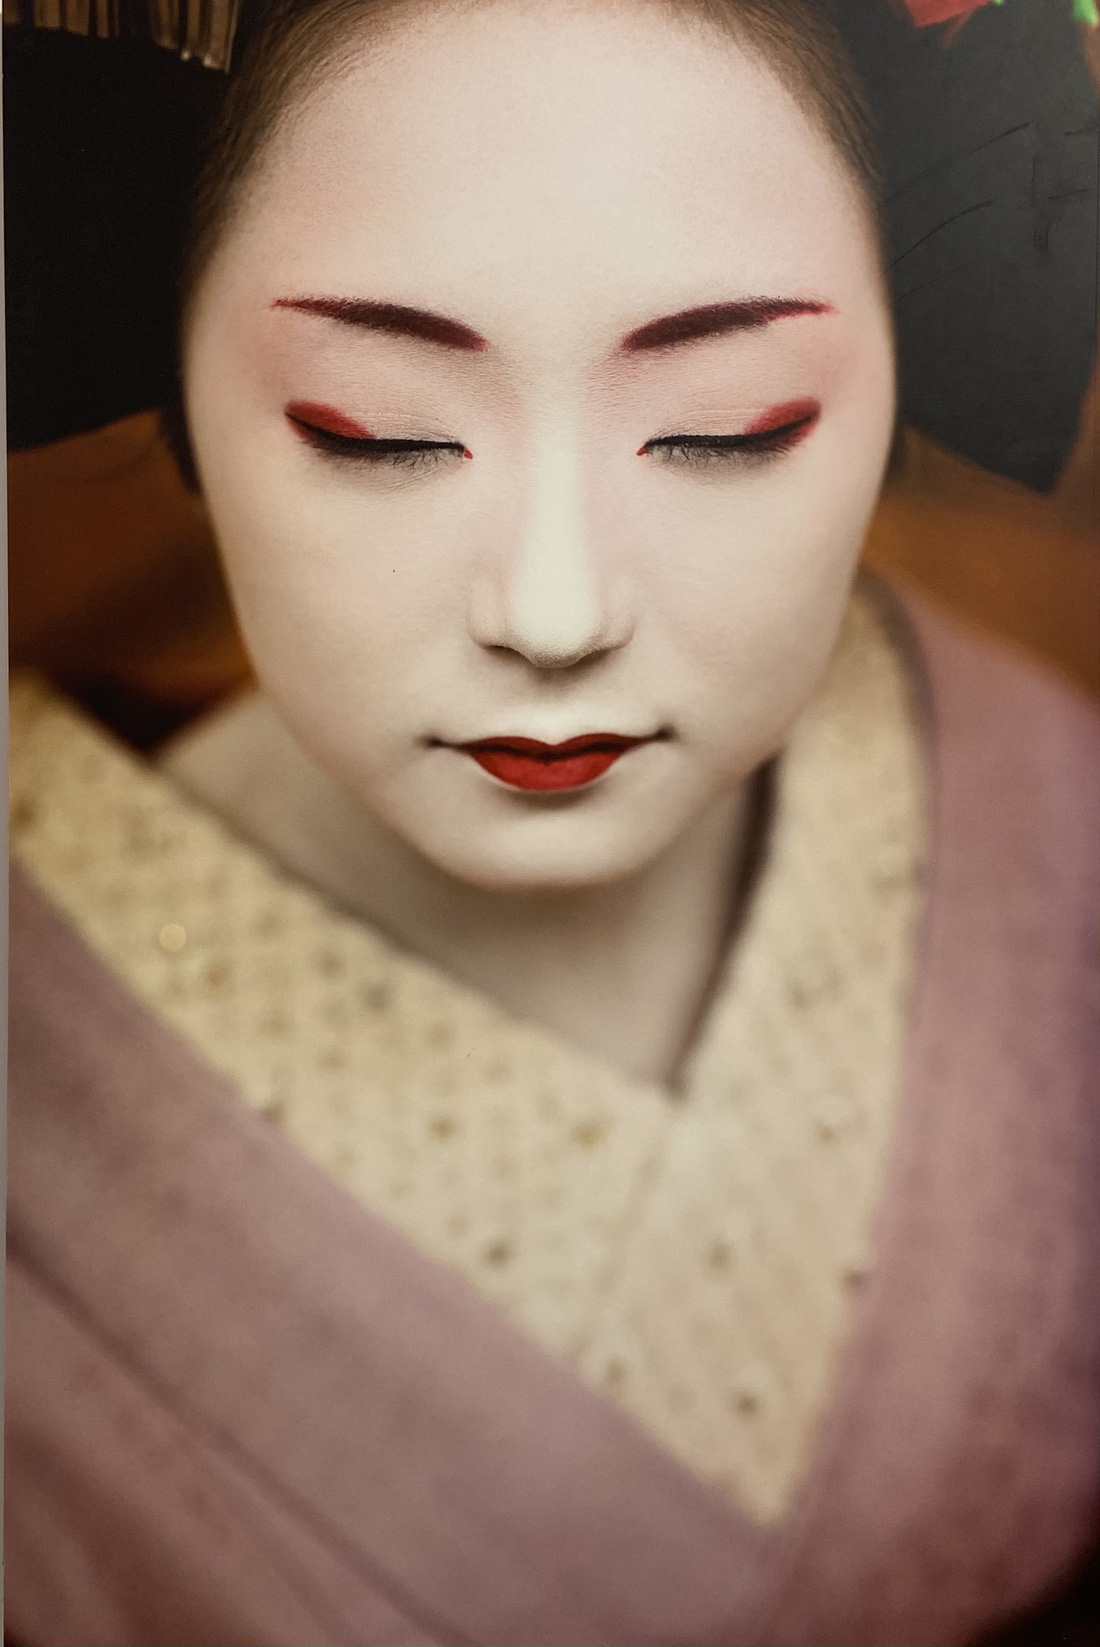 Khoảnh khắc bí ẩn các Maiko Nhật Bản qua khung hình đẹp hút hồn của nhiếp ảnh gia Pháp - Ảnh 5.